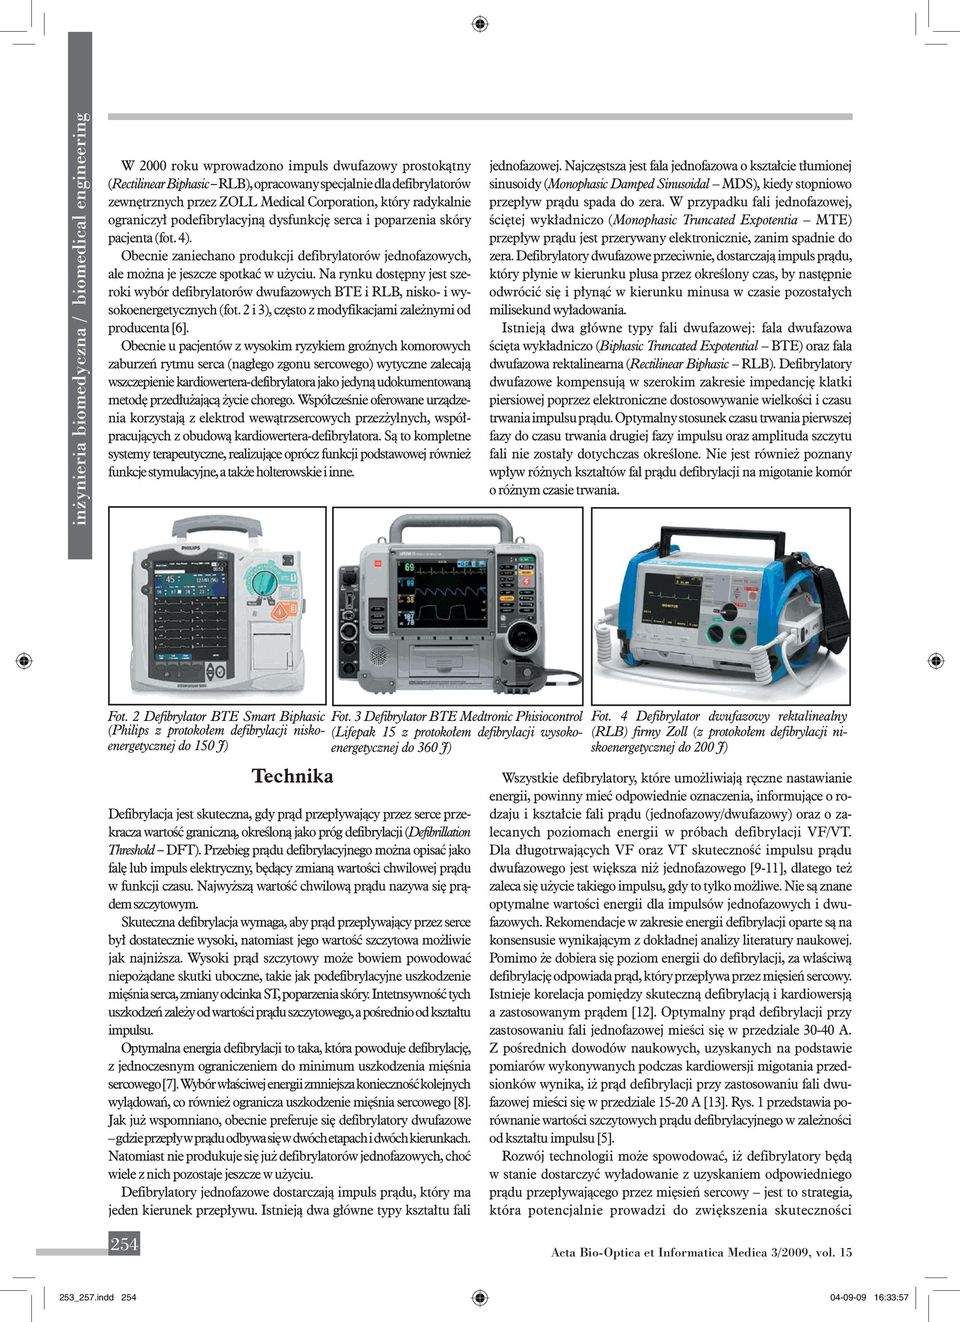 Na rynku dostępny jest szeroki wybór defibrylatorów dwufazowych BTE i RLB, nisko- i wysokoenergetycznych (fot. 2 i 3), często z modyfikacjami zależnymi od producenta [6].